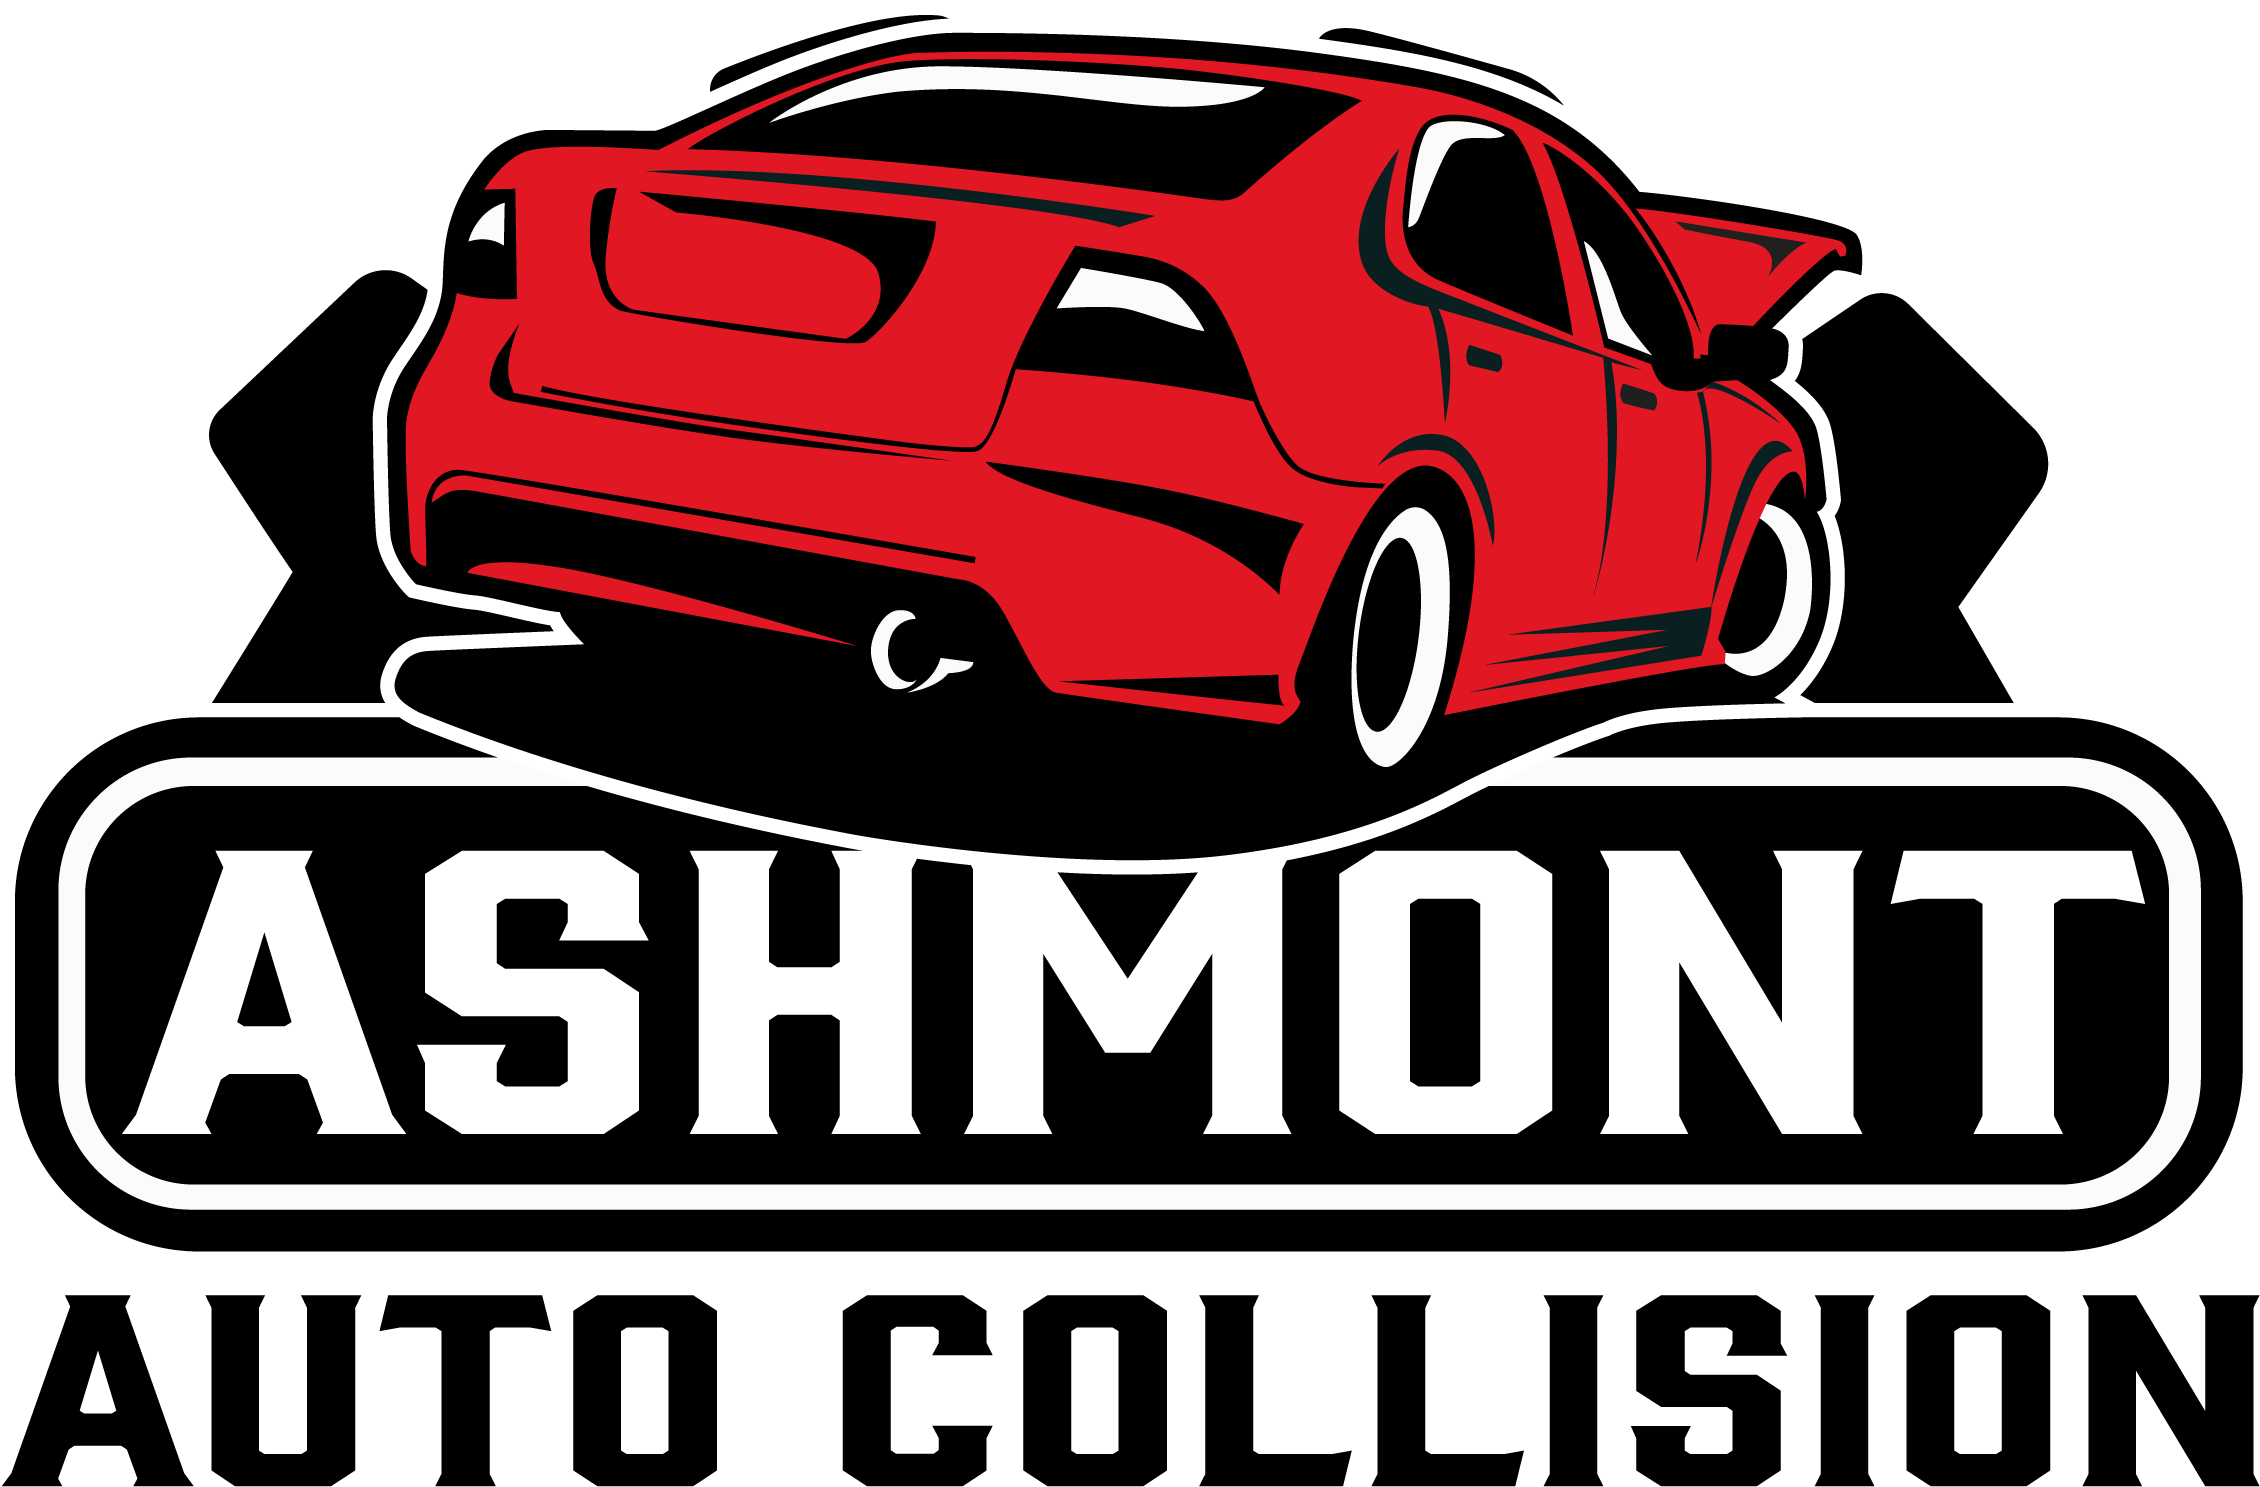 Ashmont Auto Collision, Inc. | Better Business Bureau® Profile